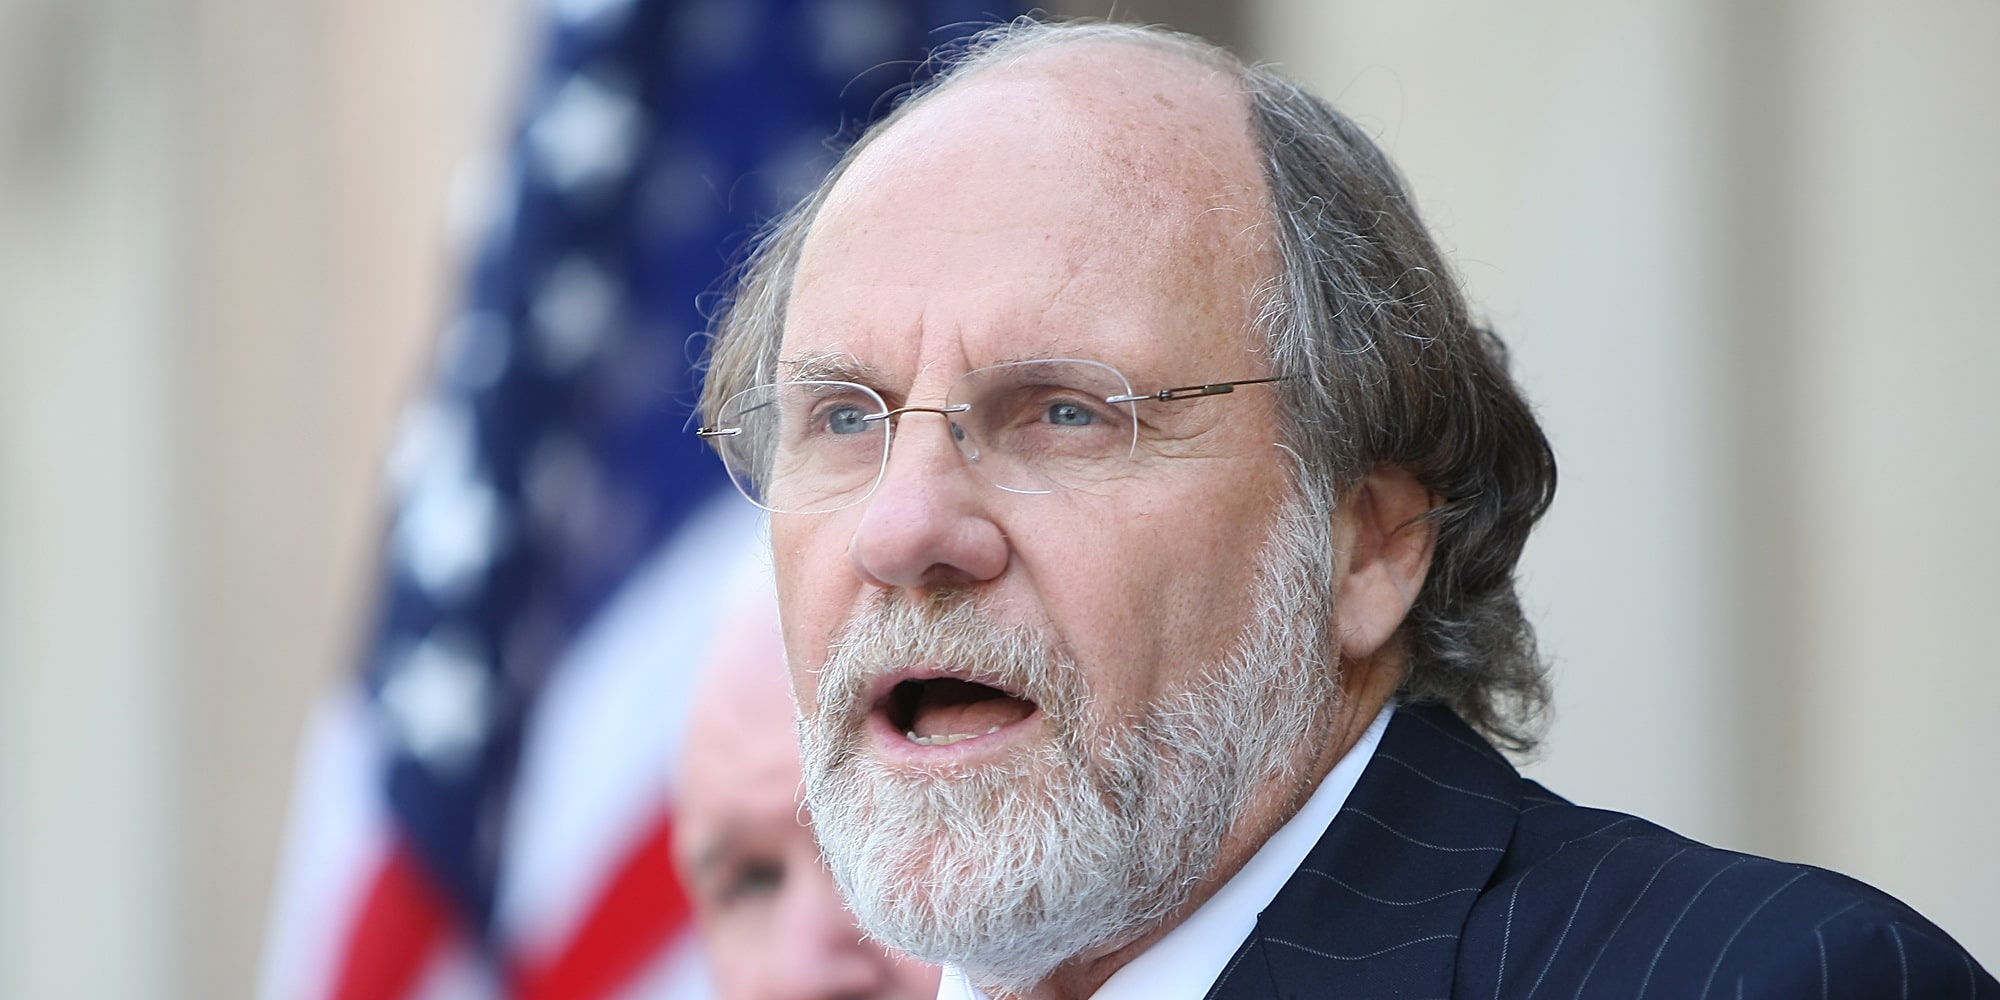 Jon Corzine And Biography Net Worth